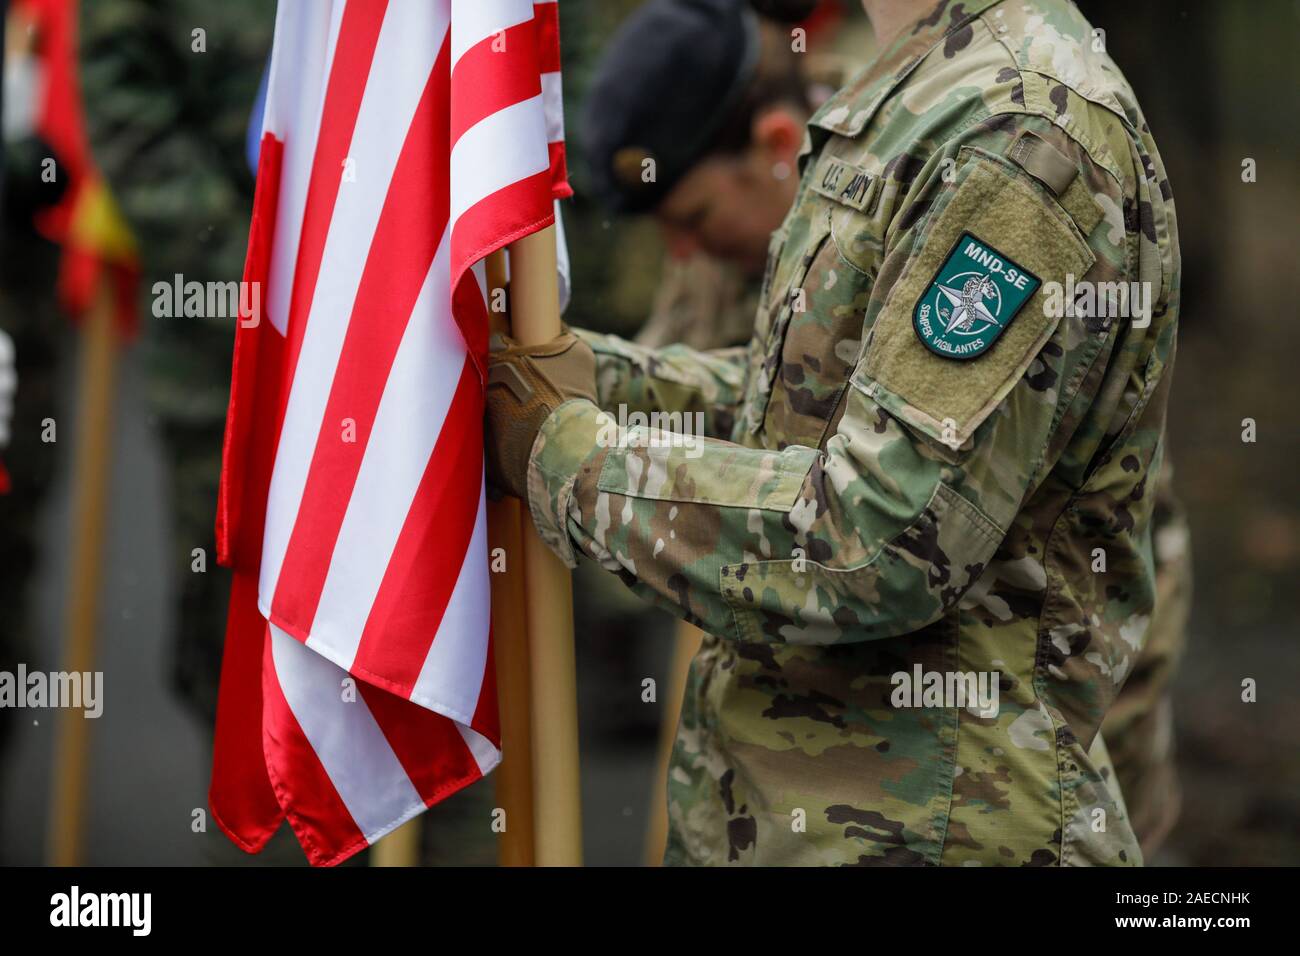 Bucarest, Rumania - Diciembre 03, 2019: US Army Soldier sosteniendo una bandera y habiendo MNDSE (División Multinacional (Sudeste) insignia. Foto de stock